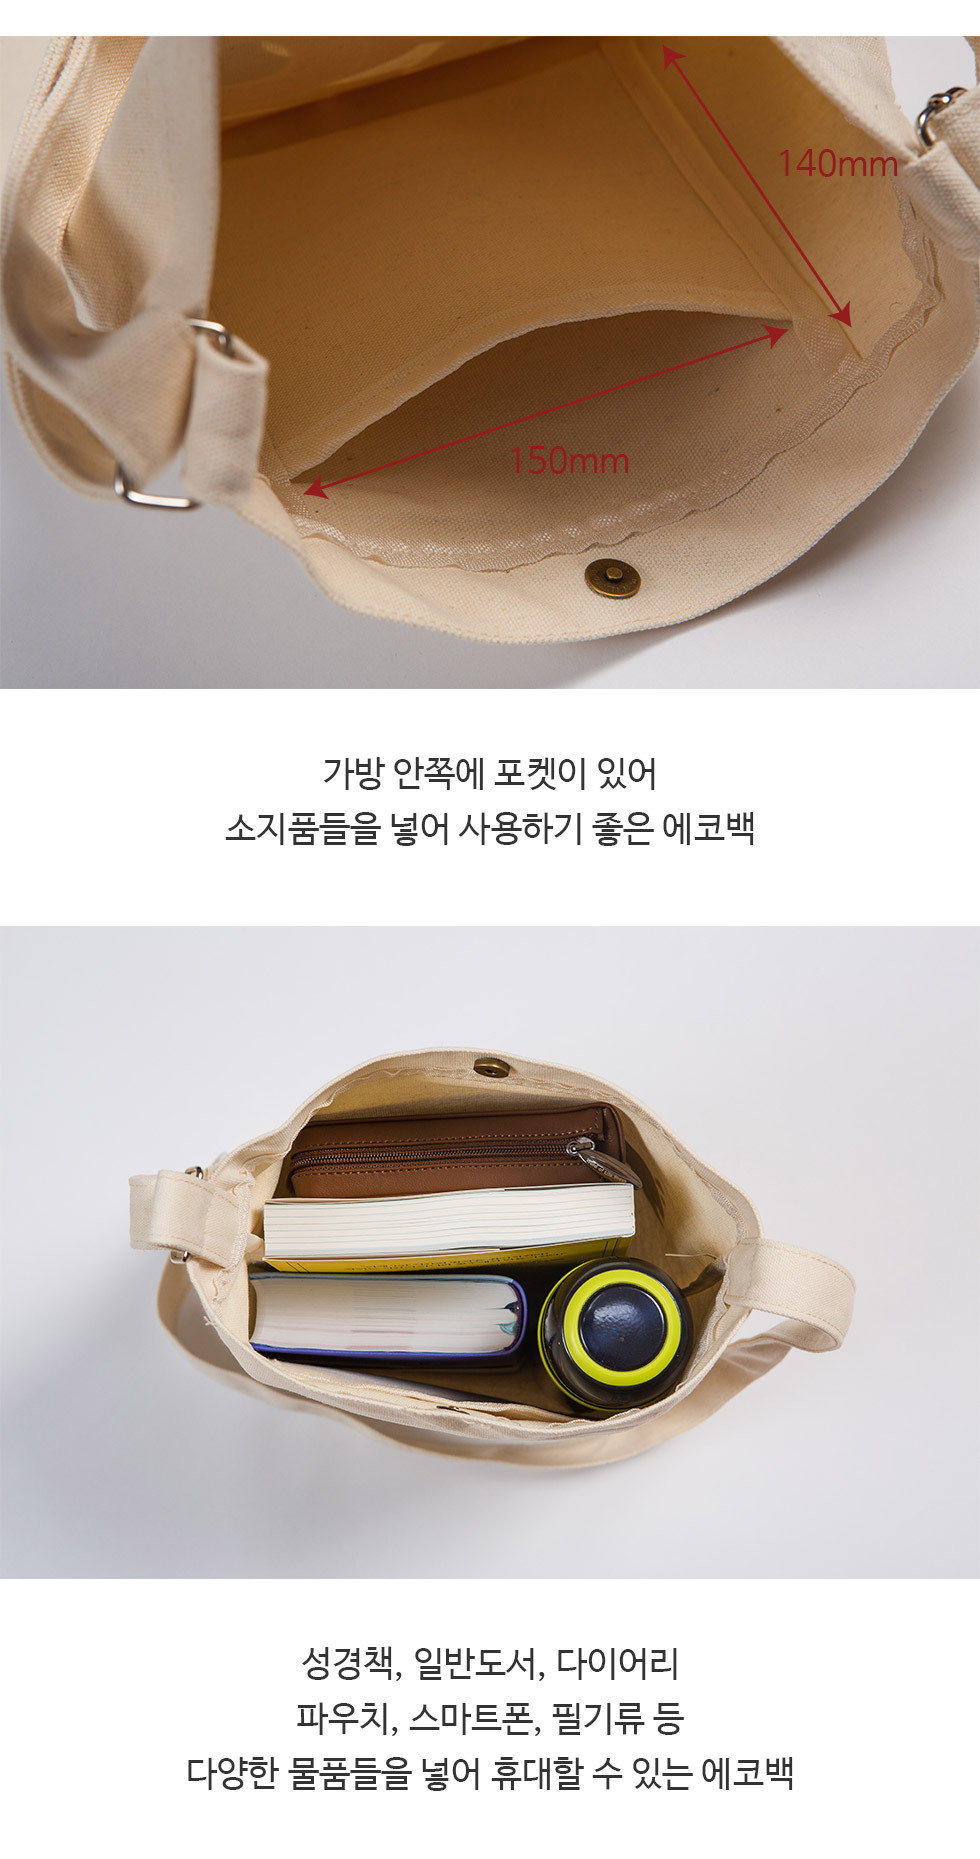 new 크로스에코백 8종 (2022 신규 디자인) 가방 안에 편리한 포켓